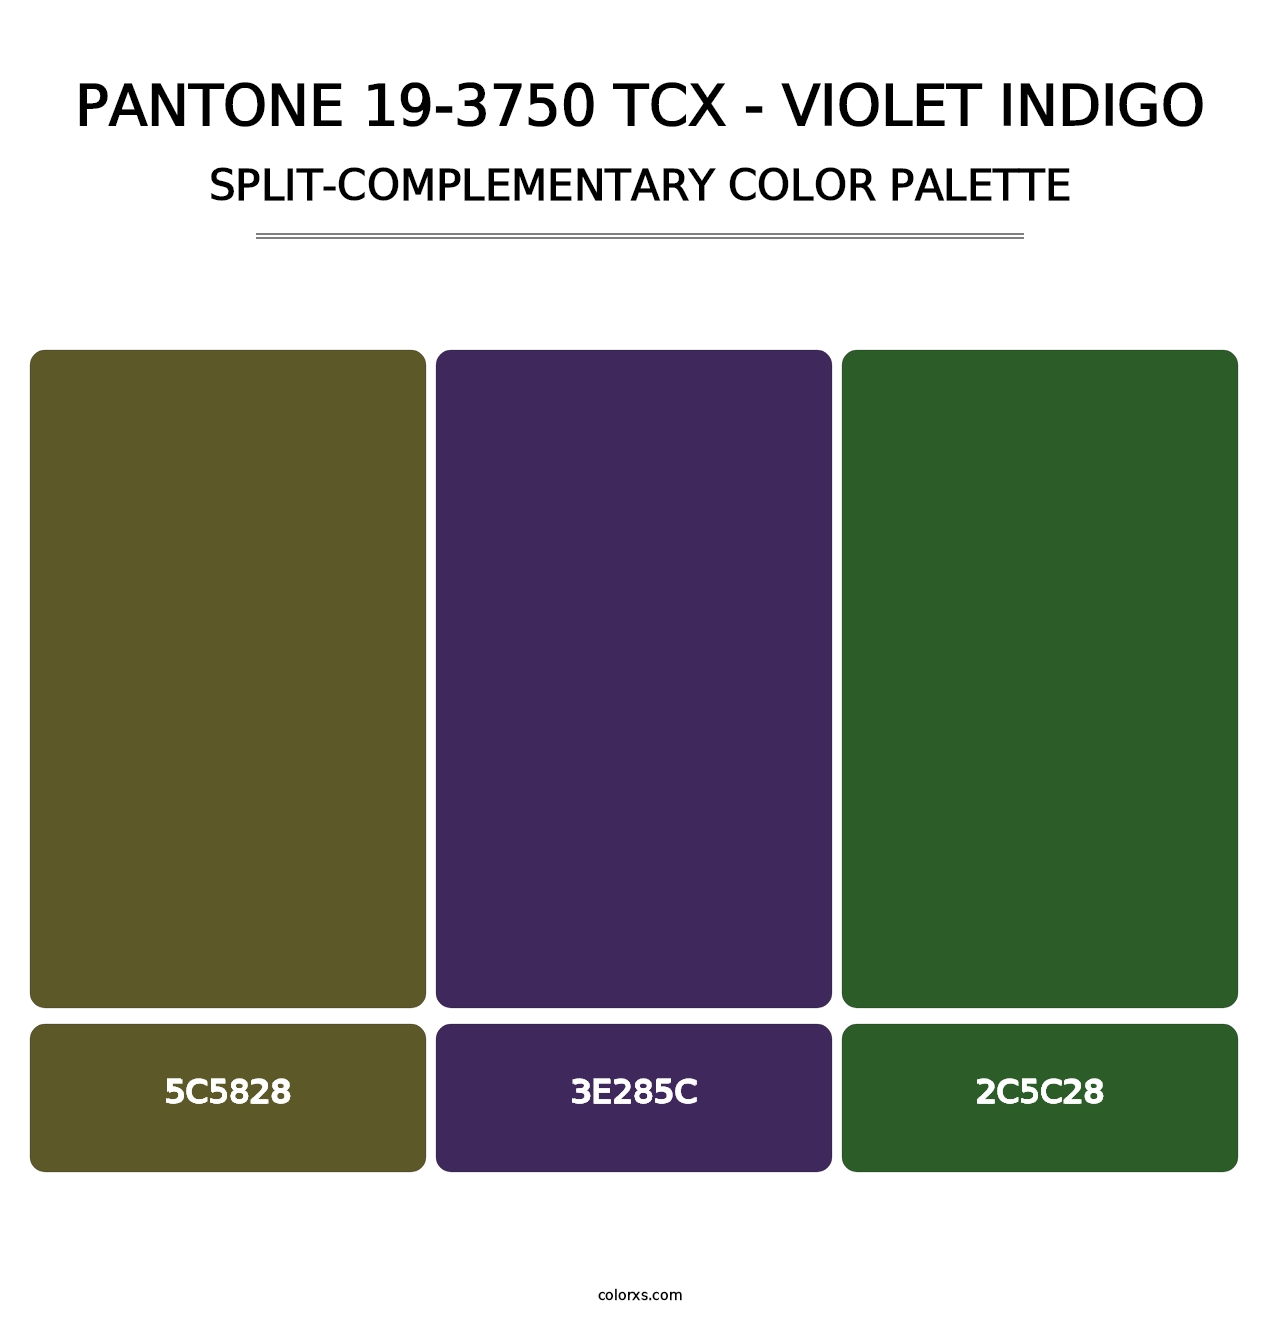 PANTONE 19-3750 TCX - Violet Indigo - Split-Complementary Color Palette